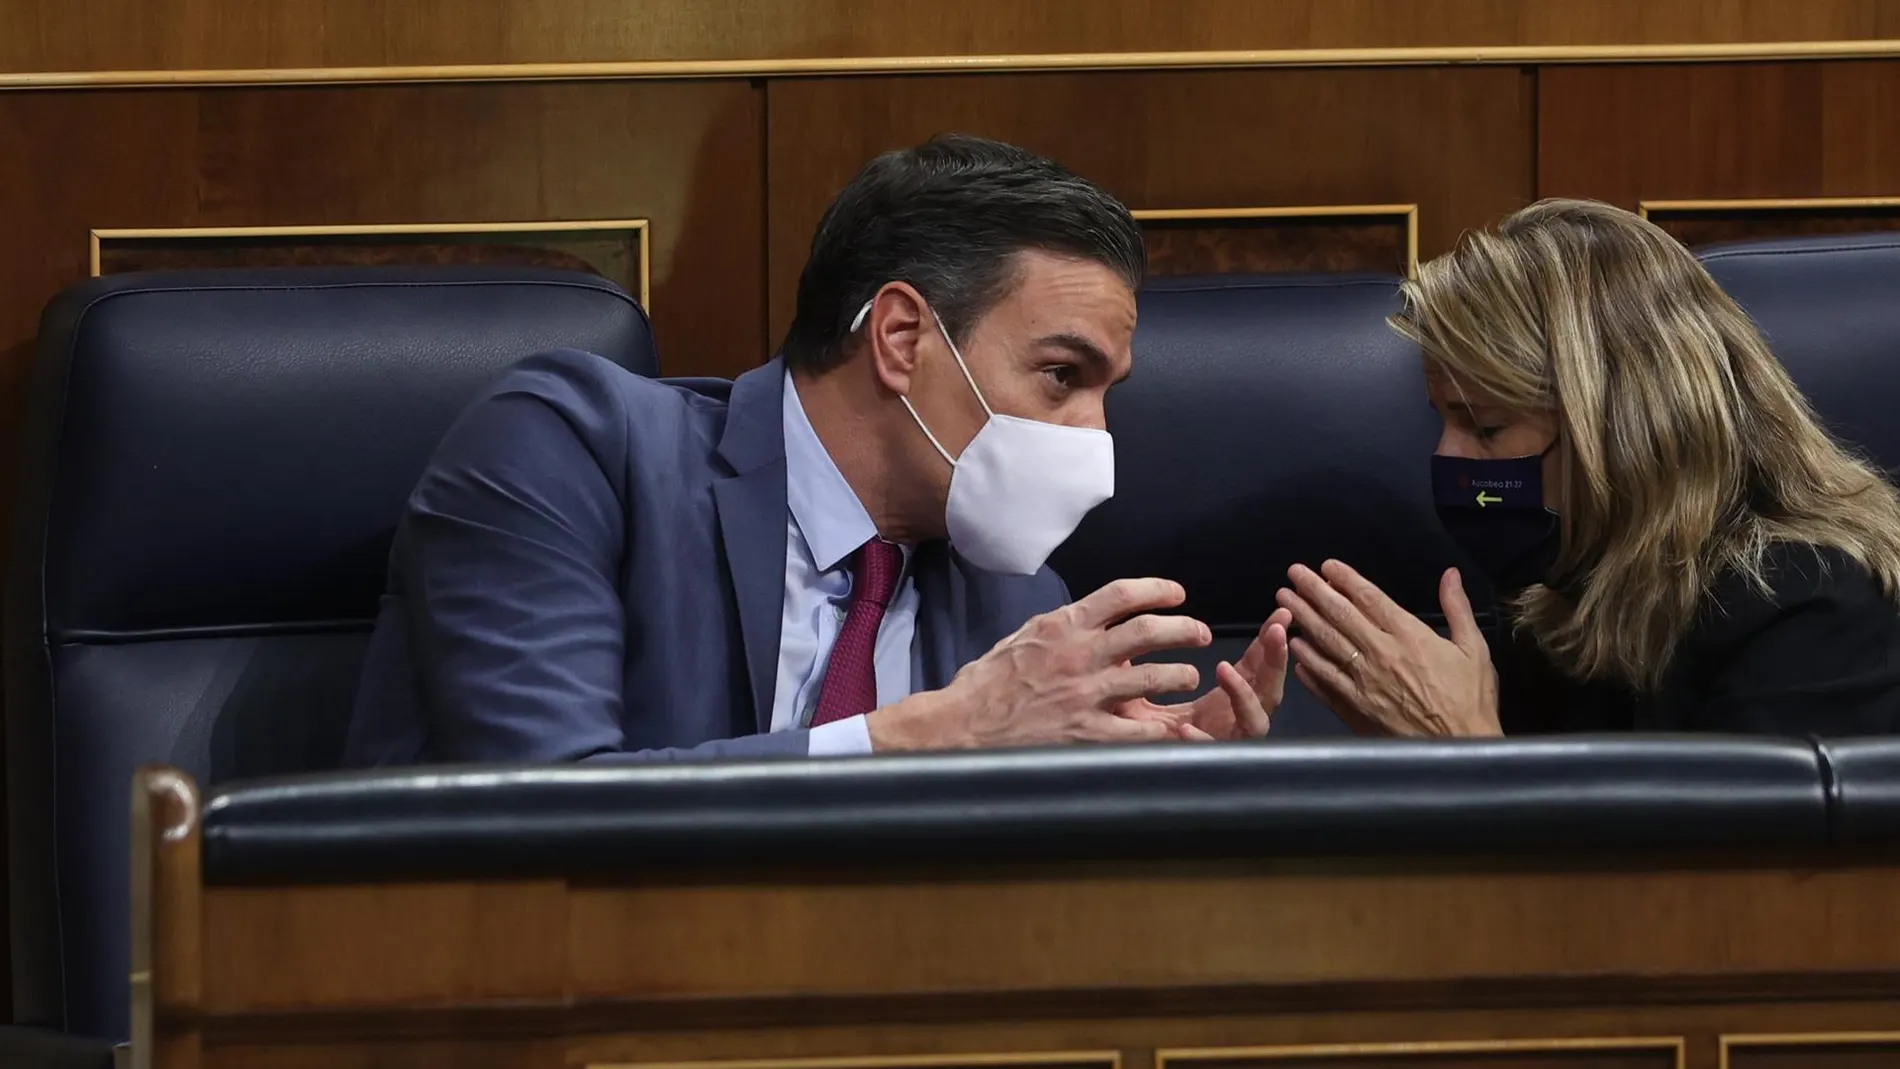 El PP pide a Pedro Sánchez evidencias científicas sobre el uso de mascarillas en exteriores para decidir si apoya el decreto